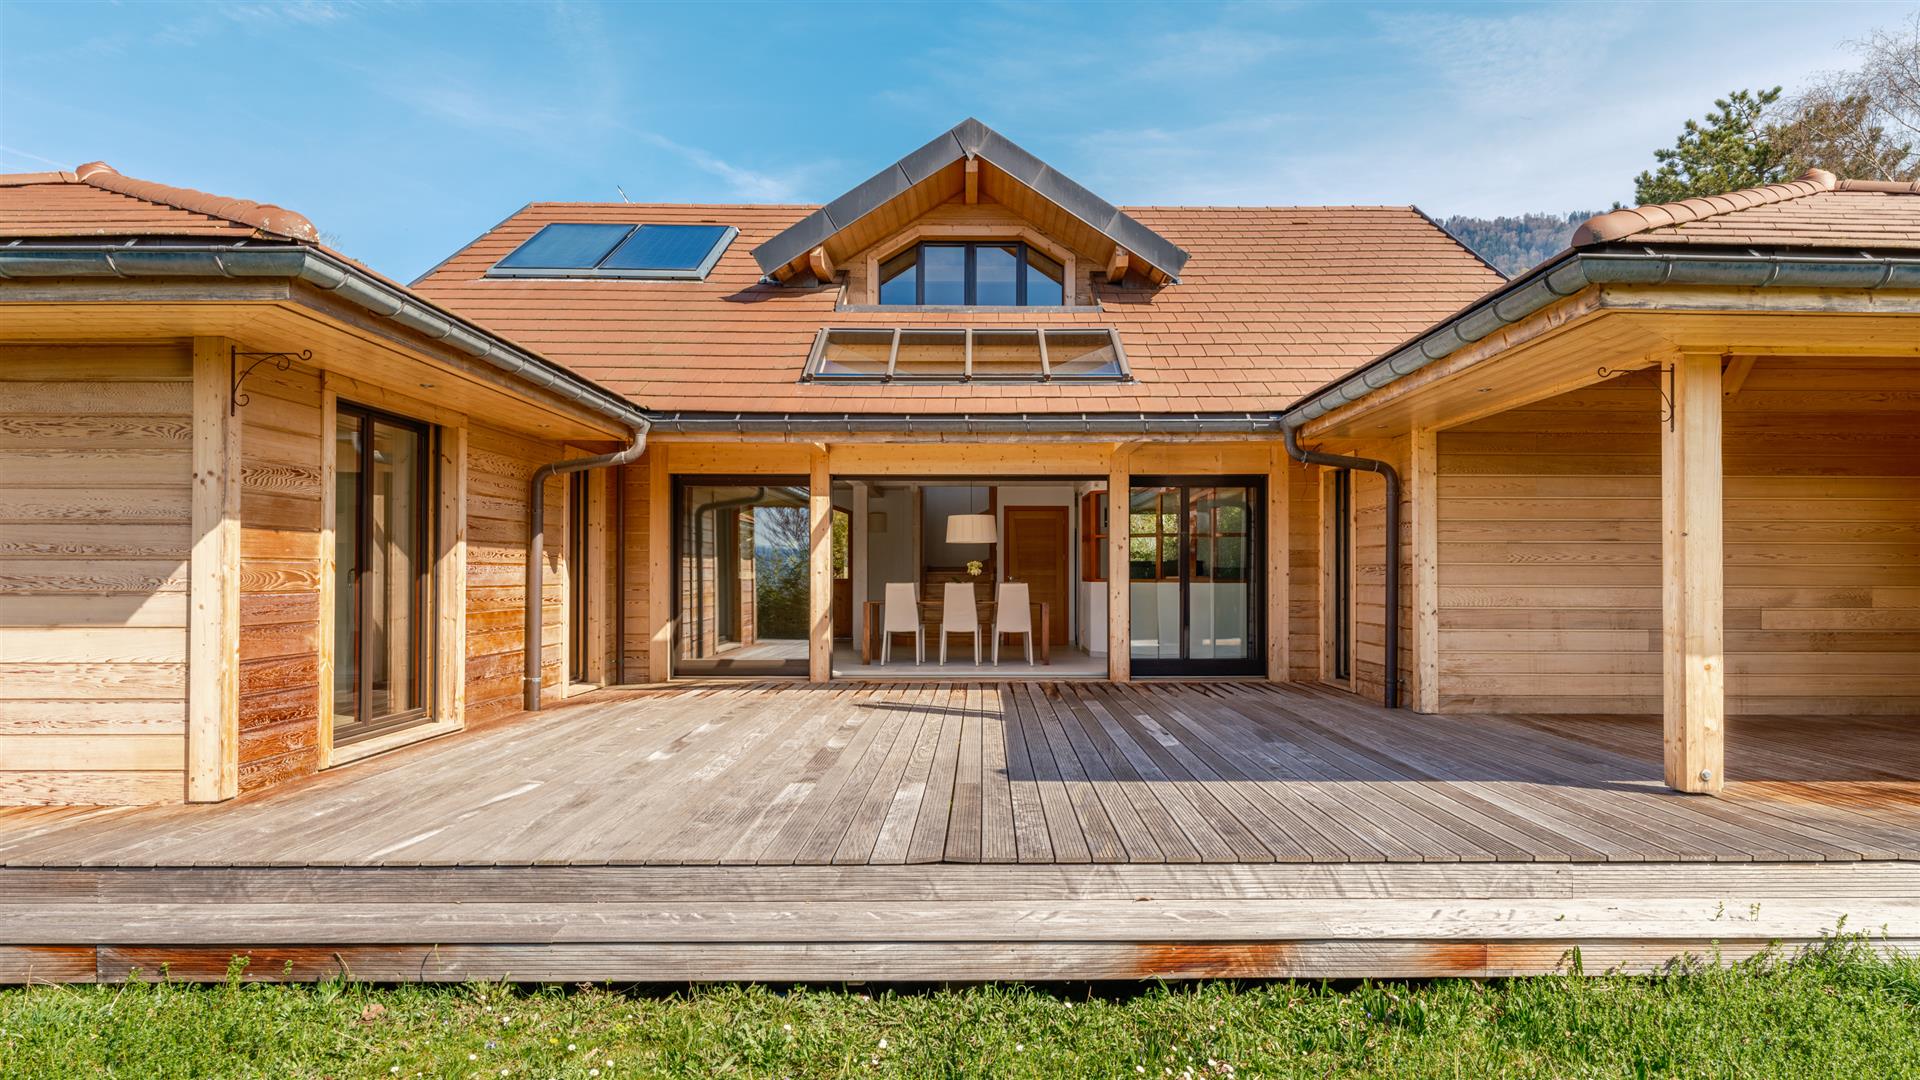 Magnífica casa projetada por arquitetos em construção ecológica, um refúgio de harmonia